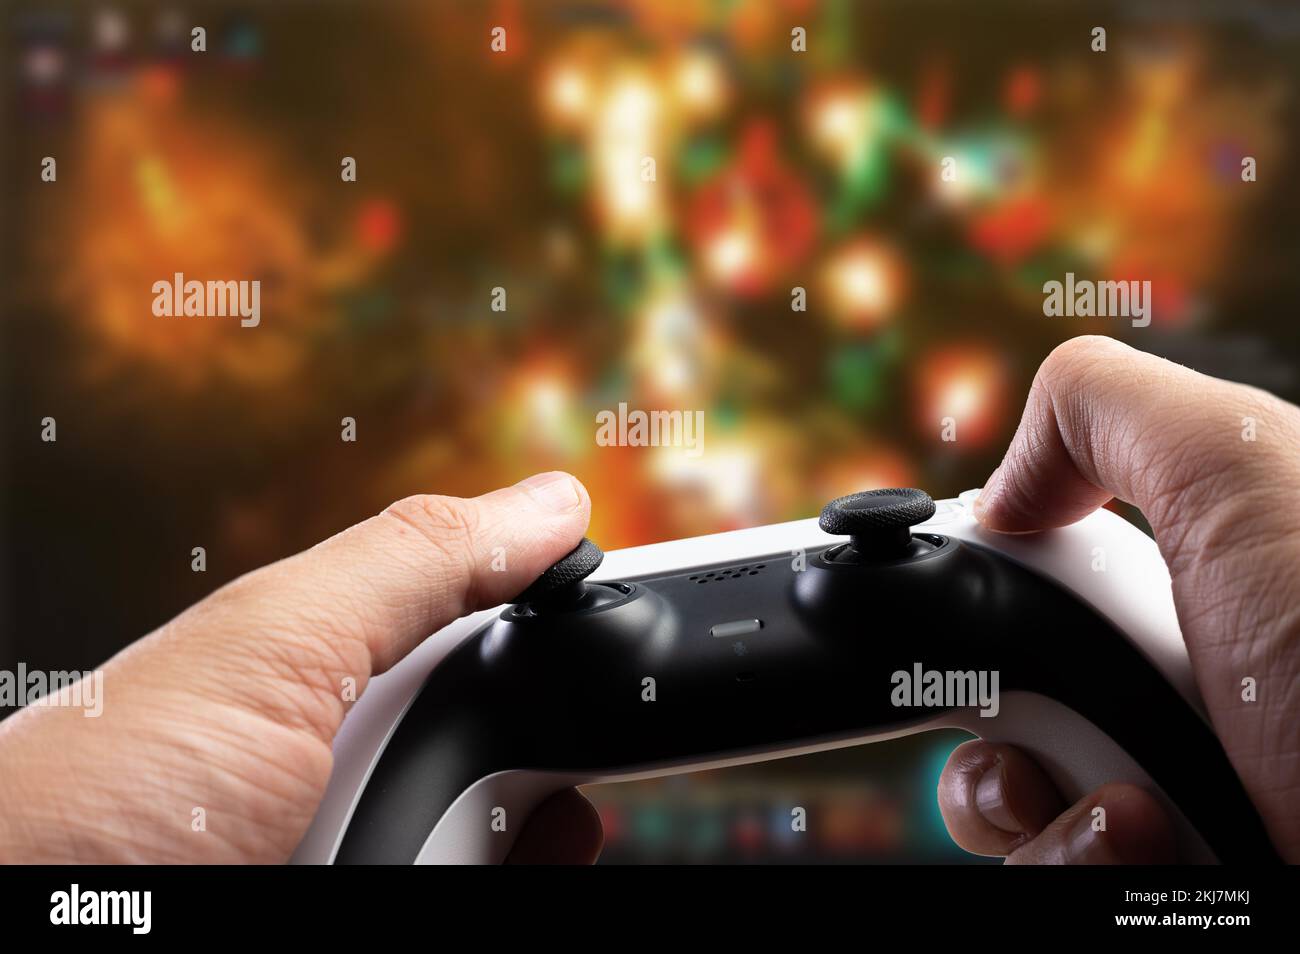 Moderner Joystick in den Händen eines Spielers mit fantasiellem Hintergrund. Videospiele, neue drahtlose Technologien, virtuelle Realität, Kommunikation mit Freunden. Stockfoto